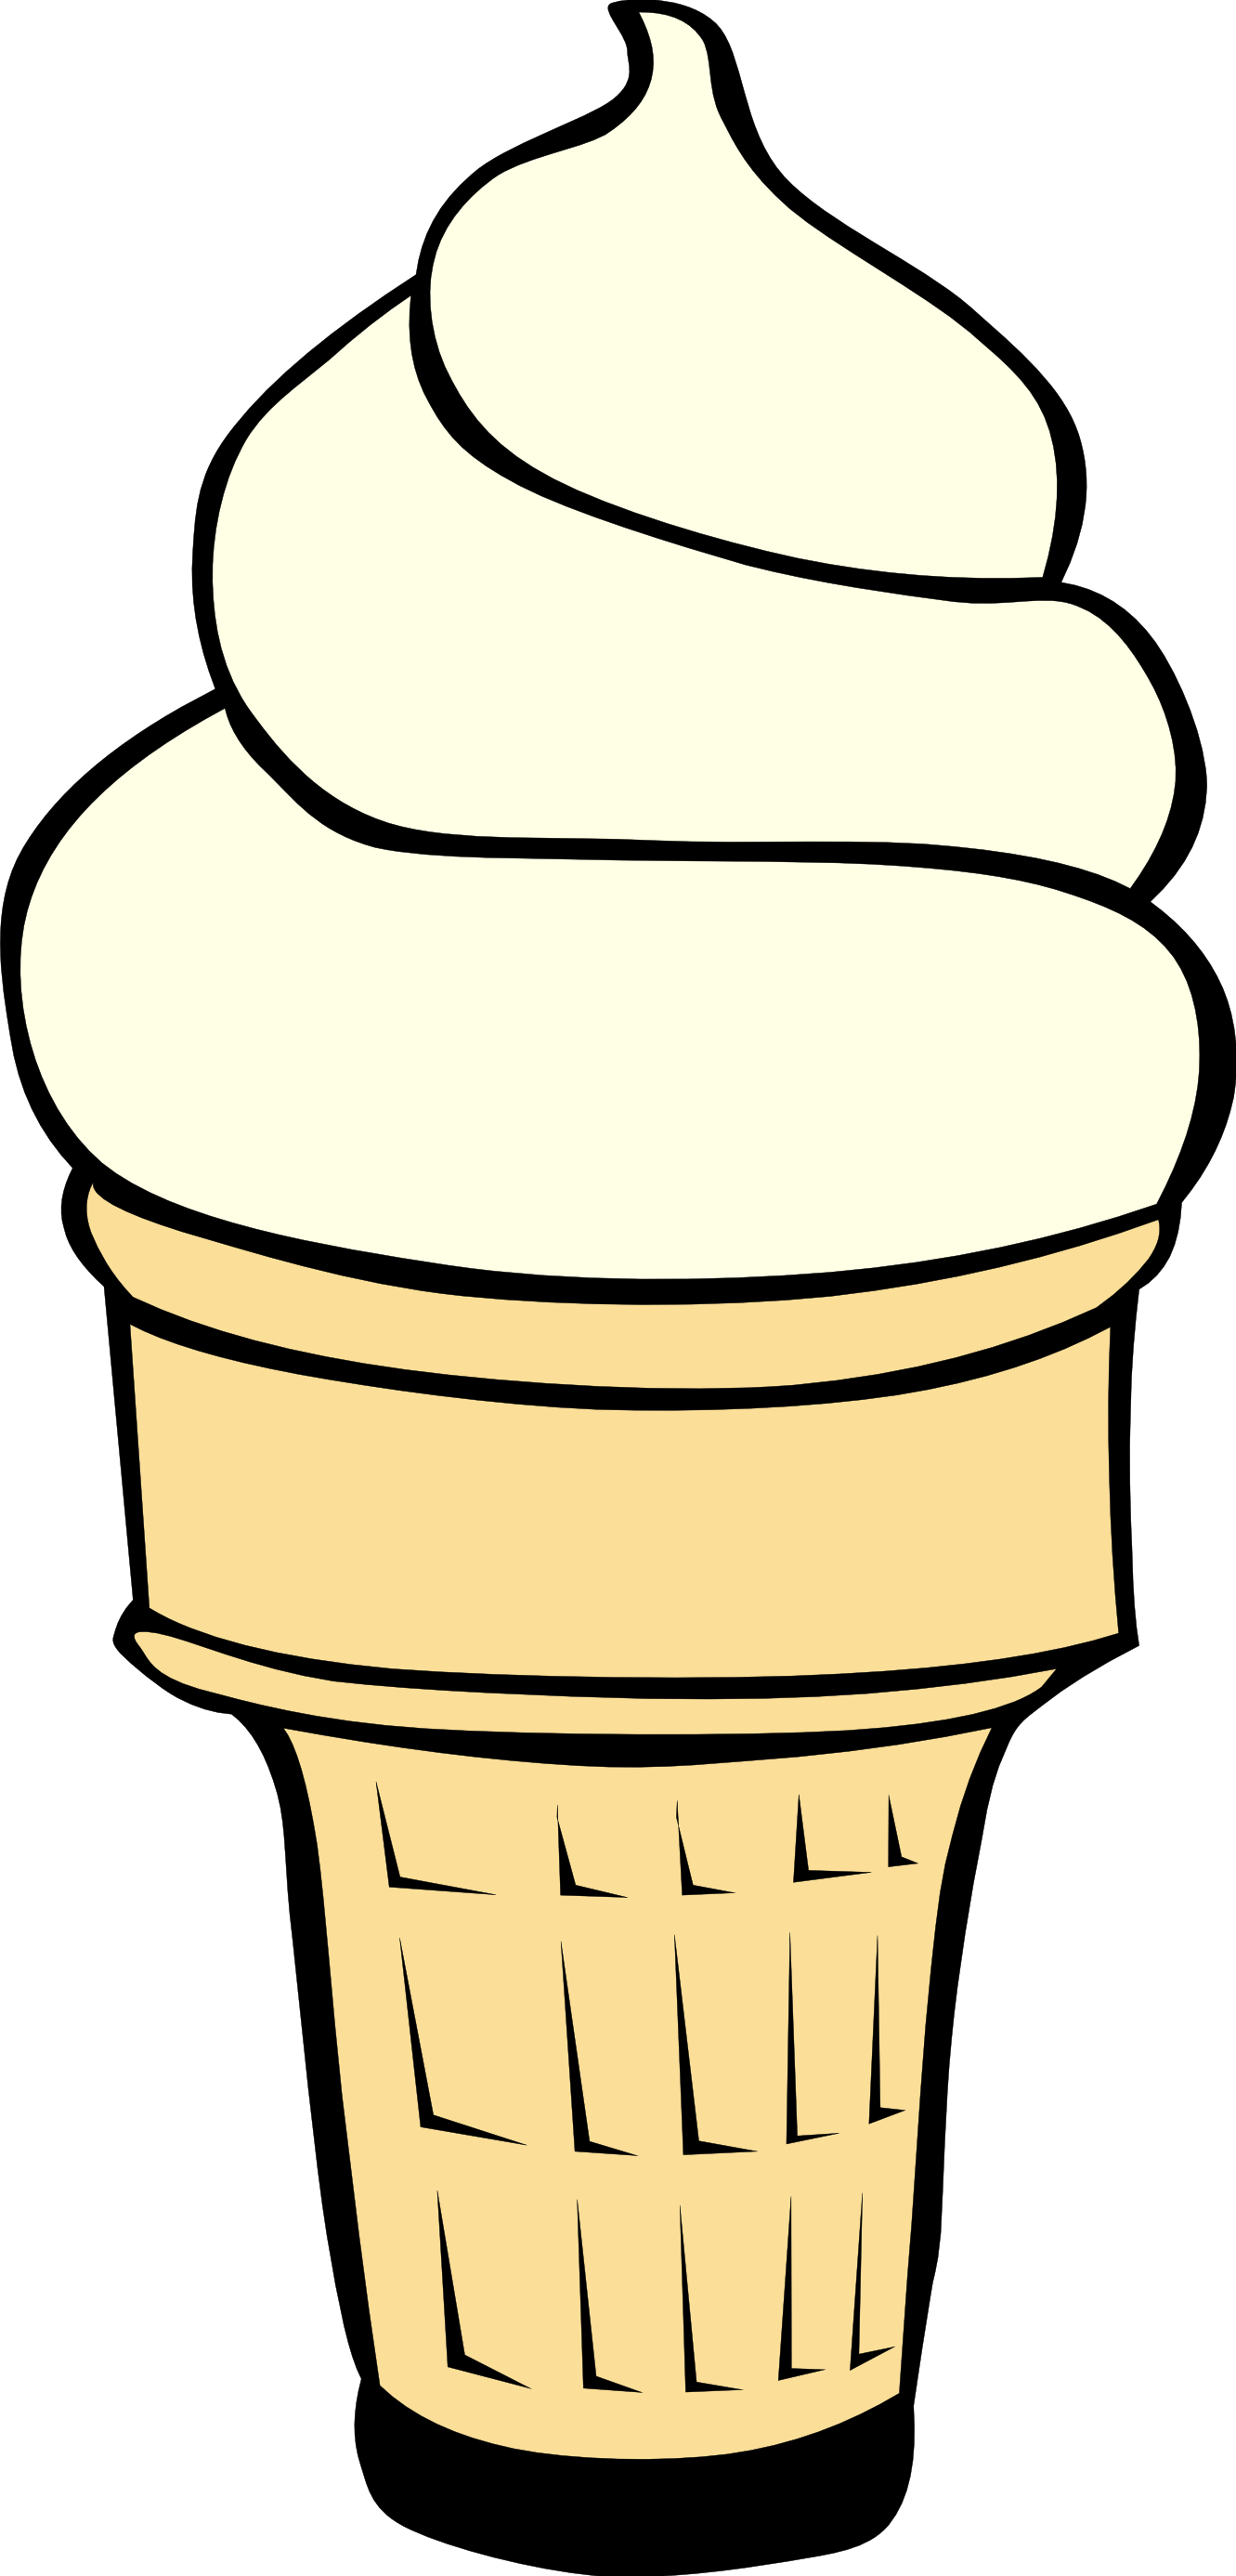 Ice cream cone clipart free images 5 - Clipartix